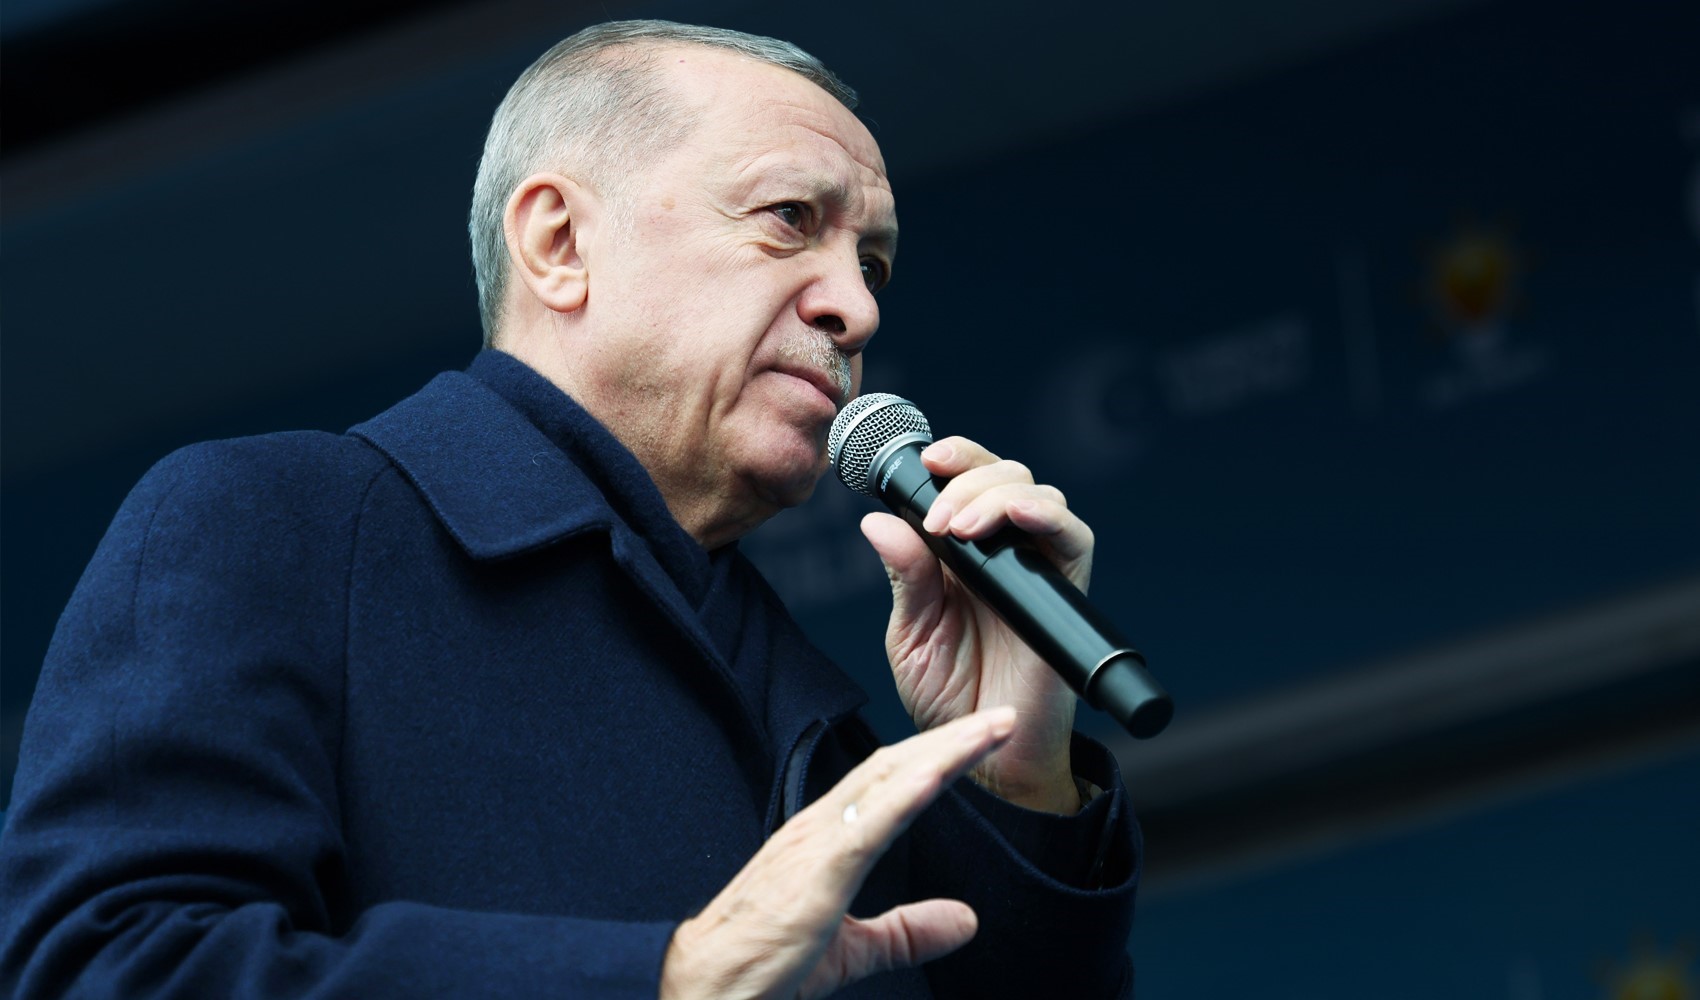 AKP'li kurmaylar açıkladı: 'Oy yoksa hizmet yok' söylemi bilinçli yapılıyor!